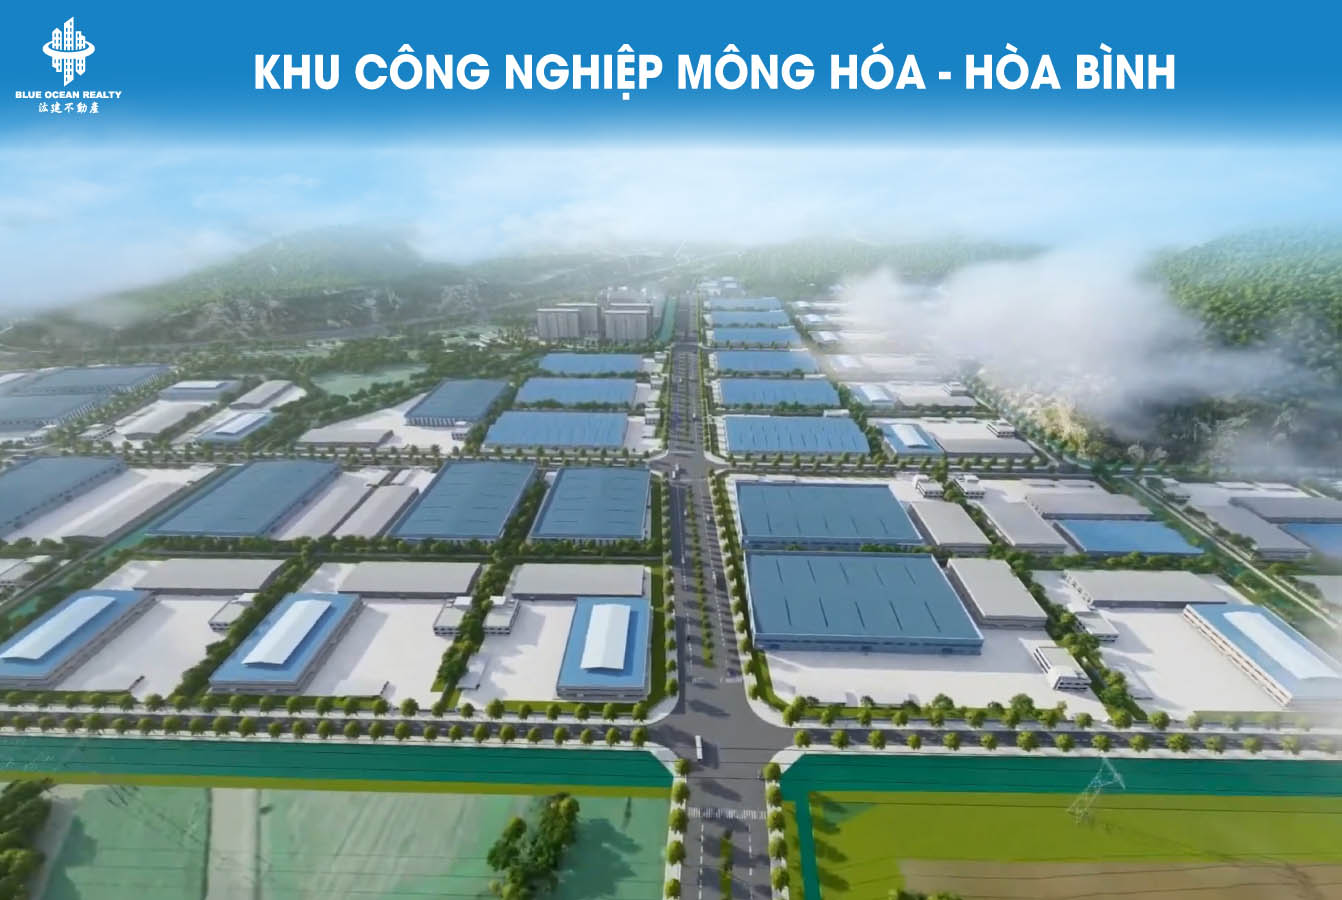 Khu công nghiệp (KCN) Mông Hóa - Hòa Bình